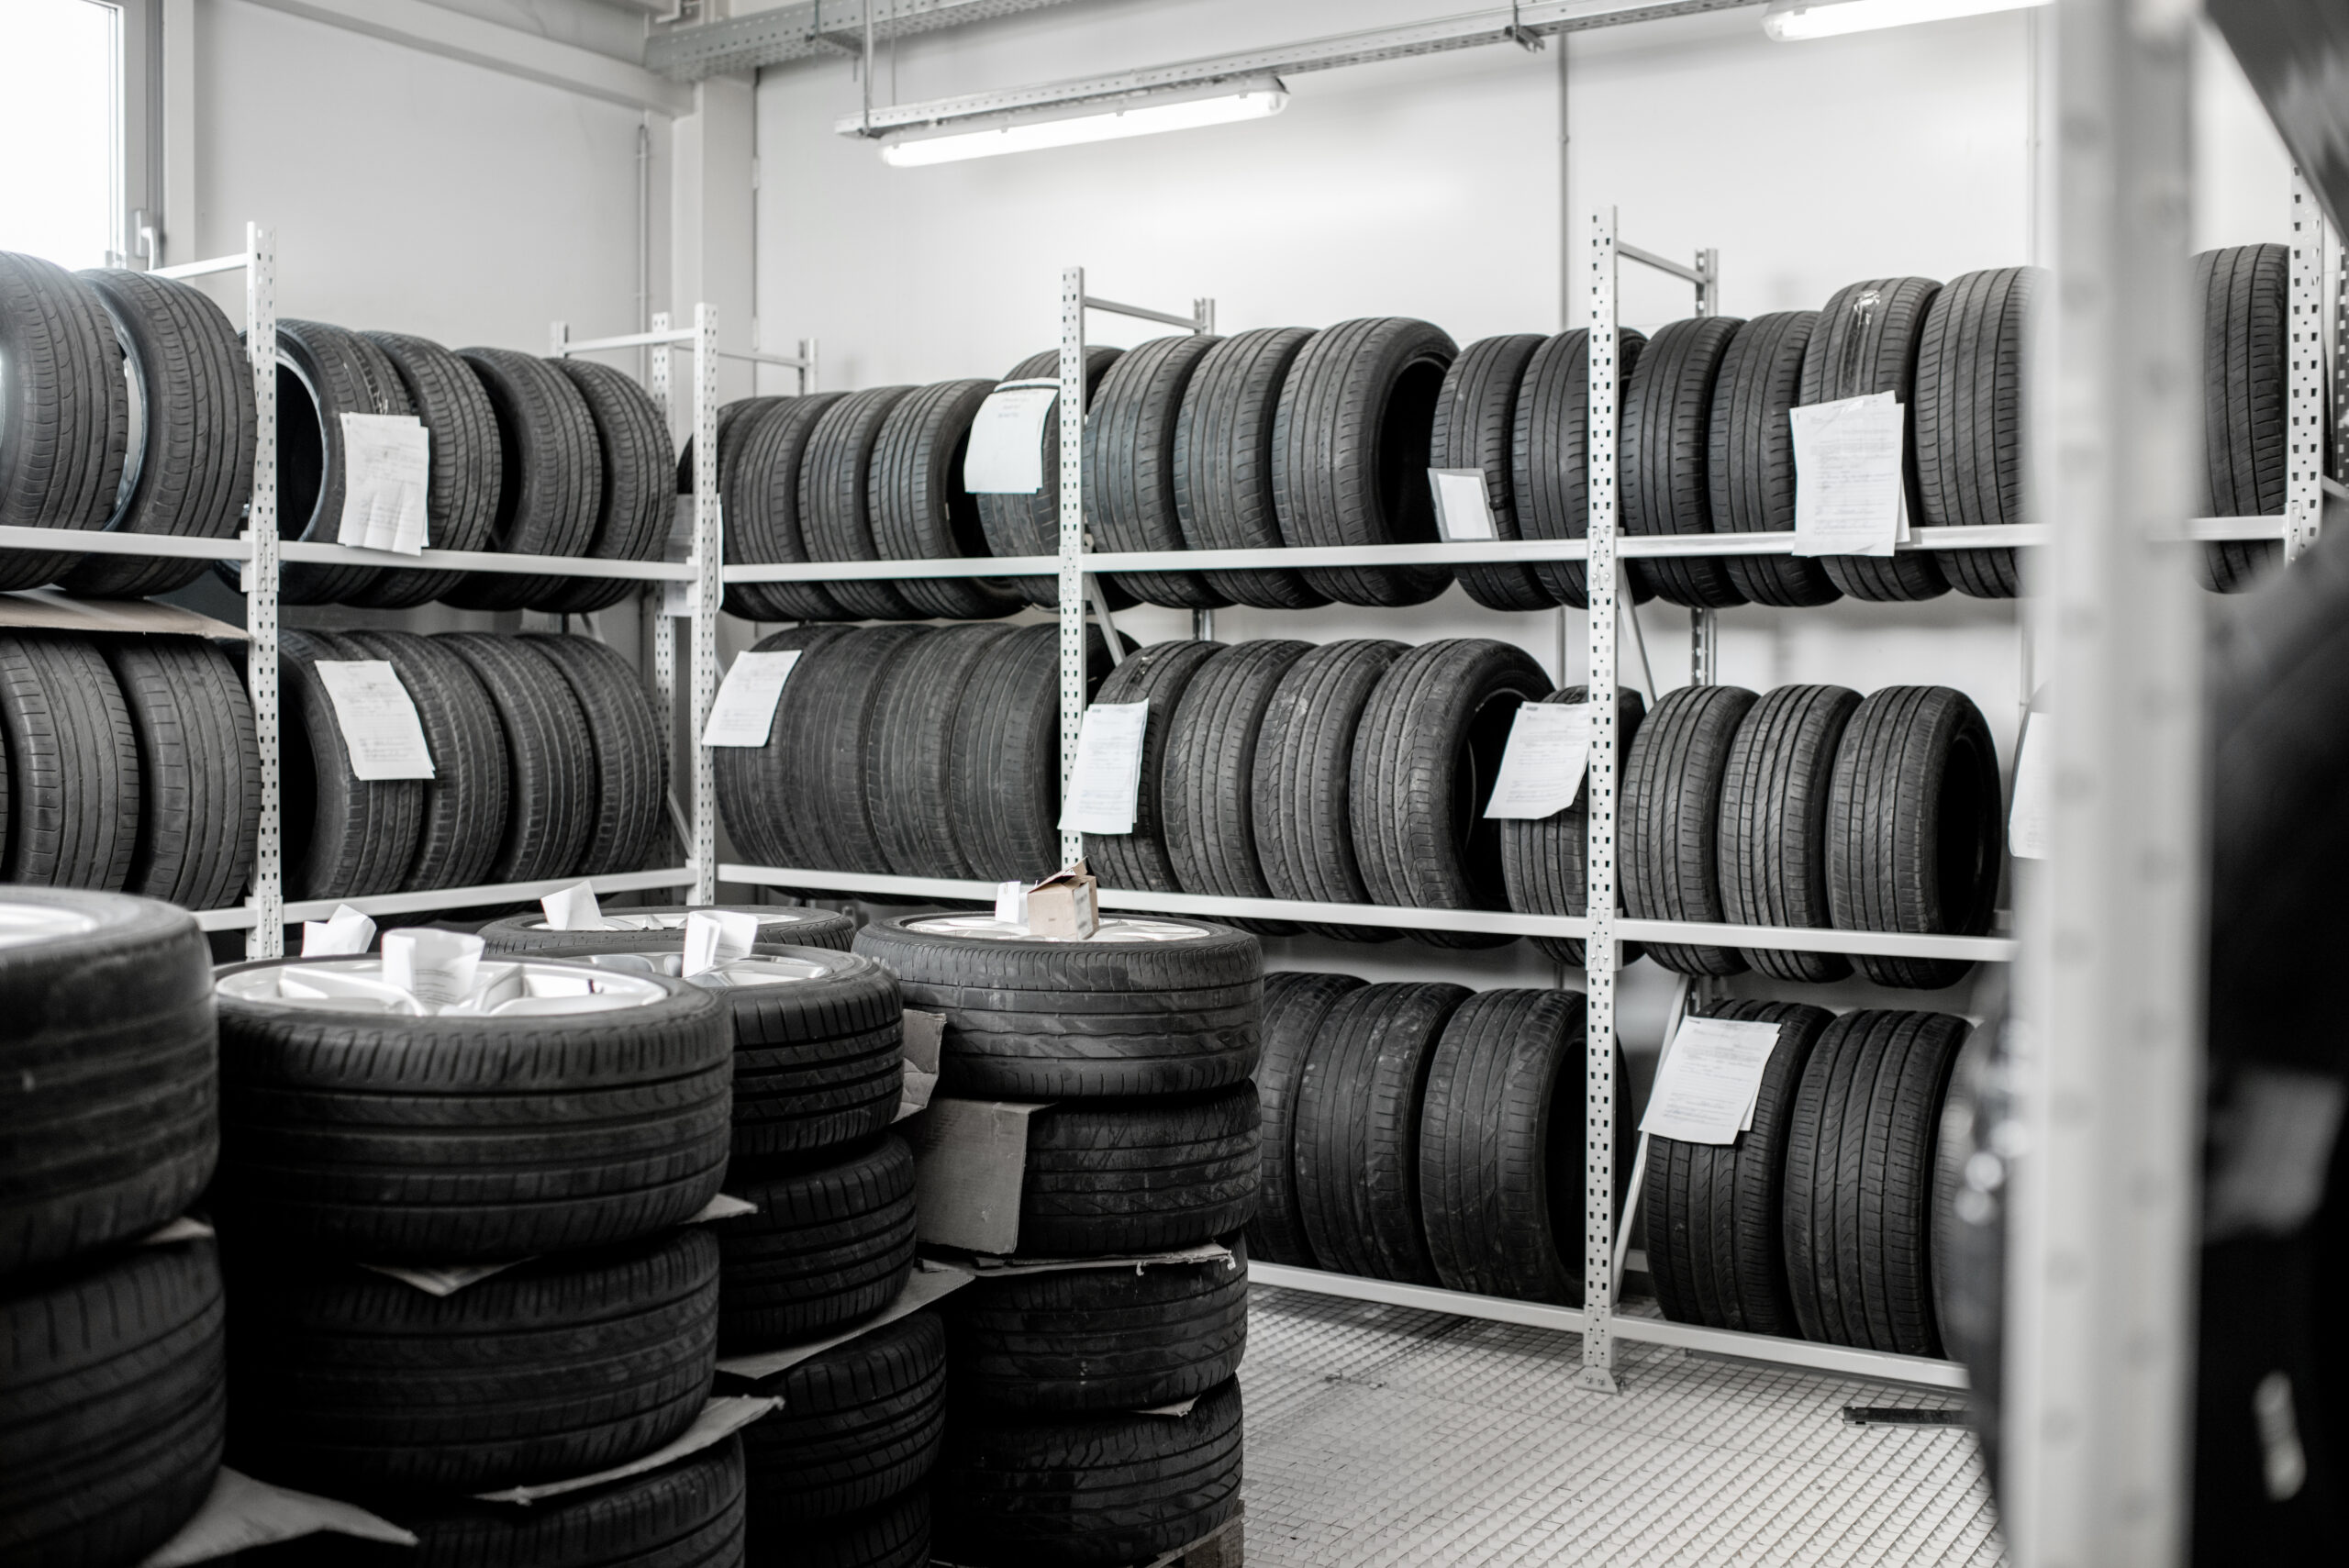 Warehouse wiith car tires